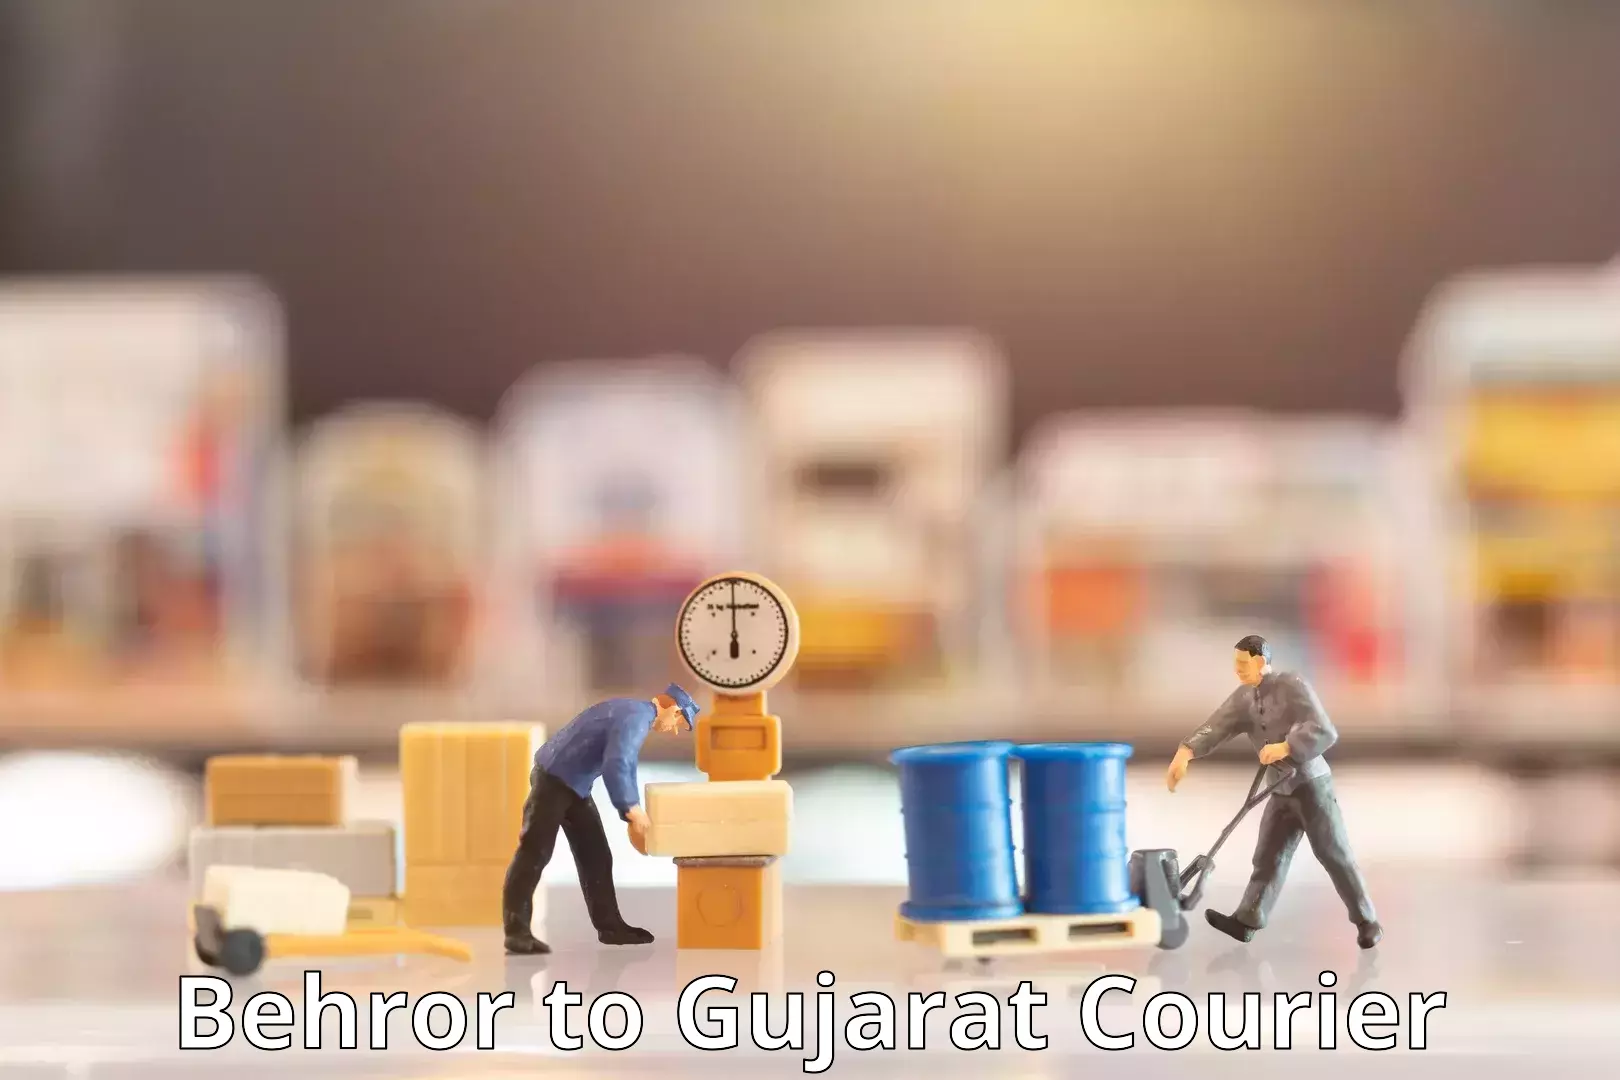 Business logistics support Behror to IIIT Surat